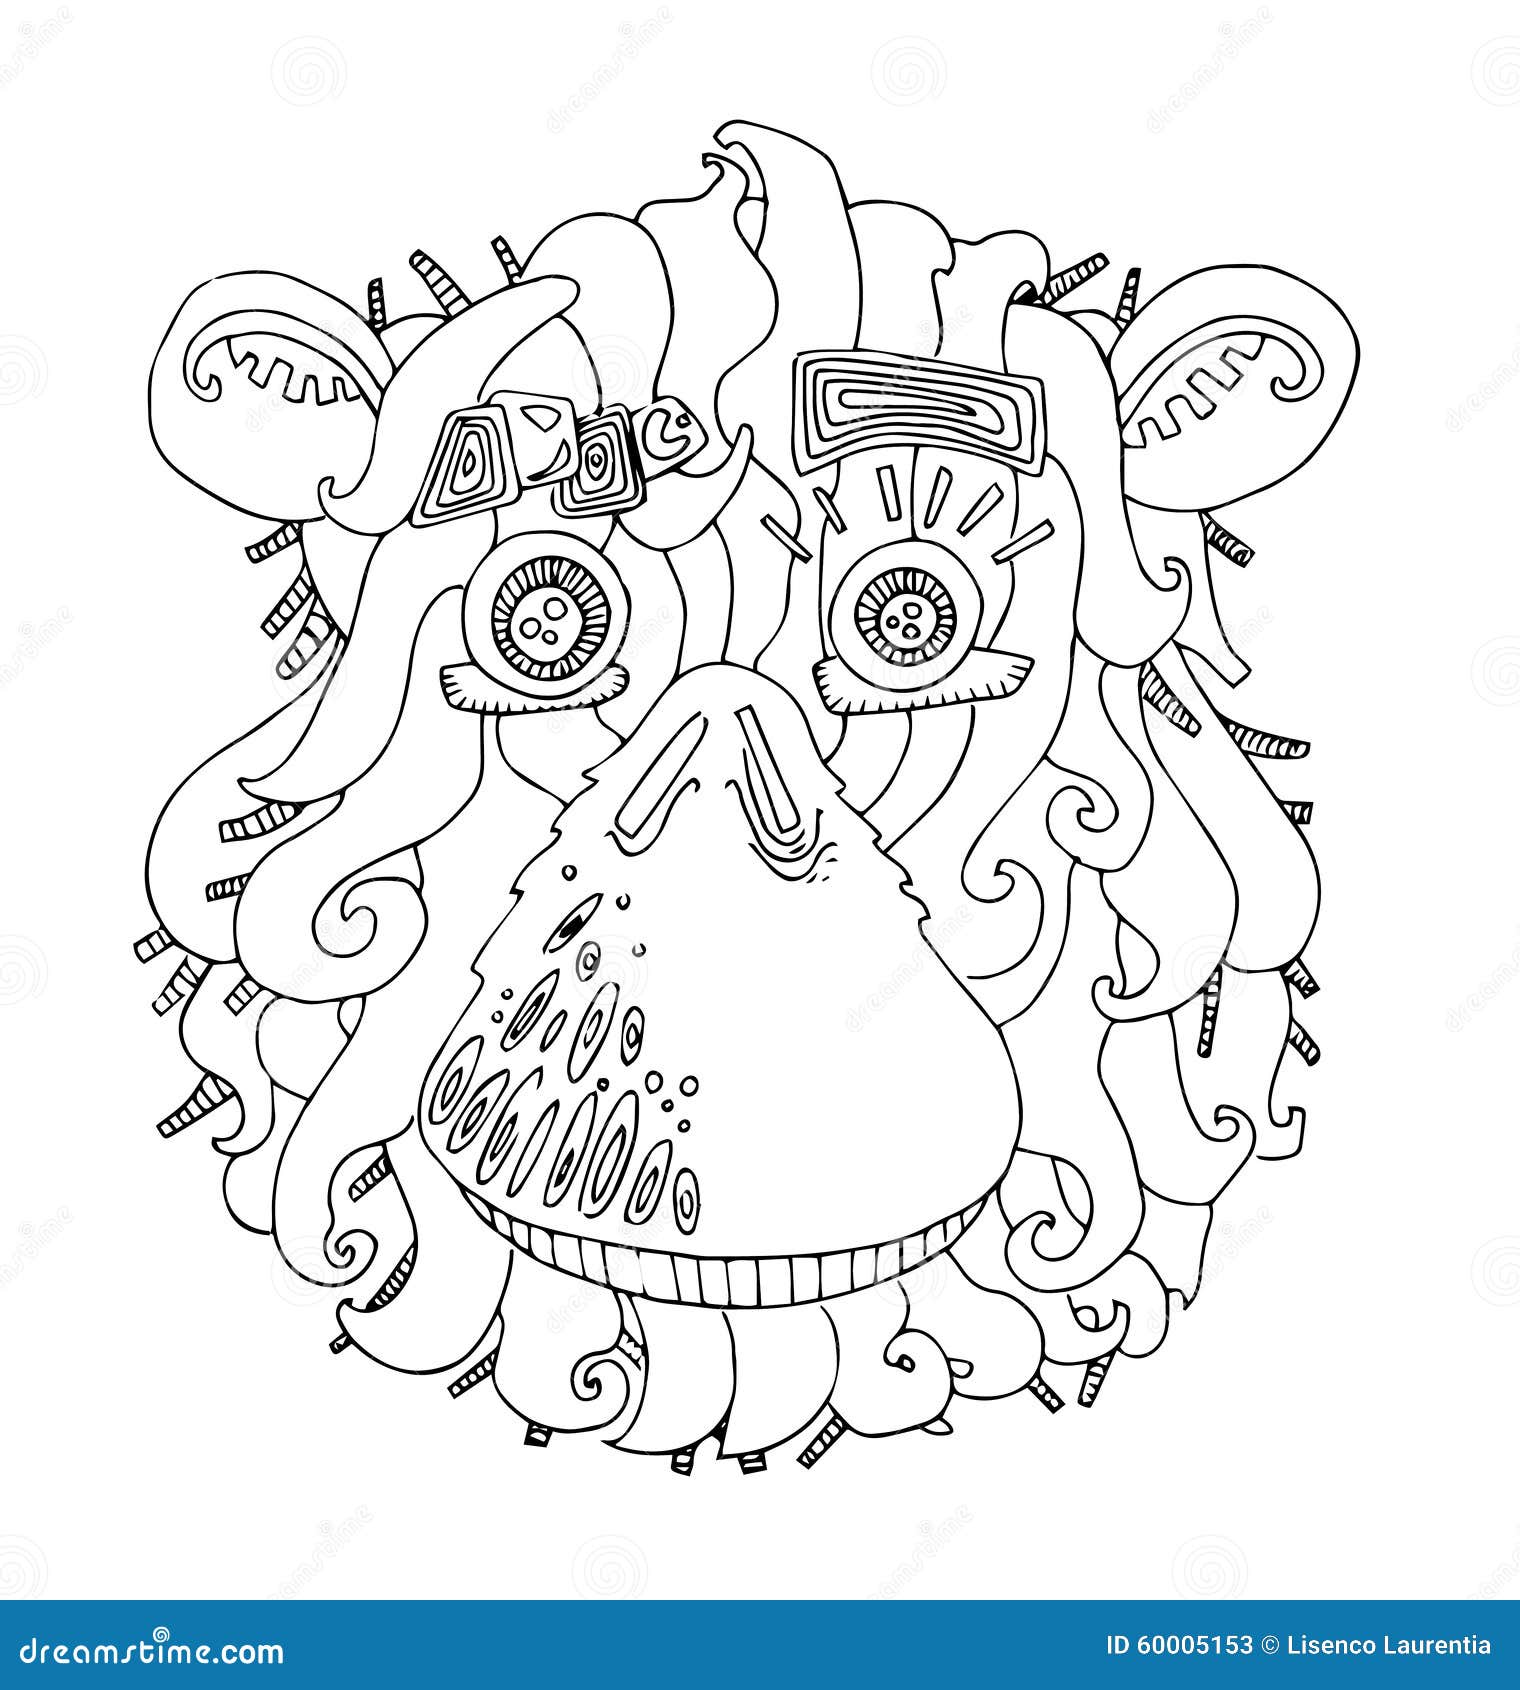 Desenho de Macaco para colorir  Desenhos para colorir e imprimir gratis